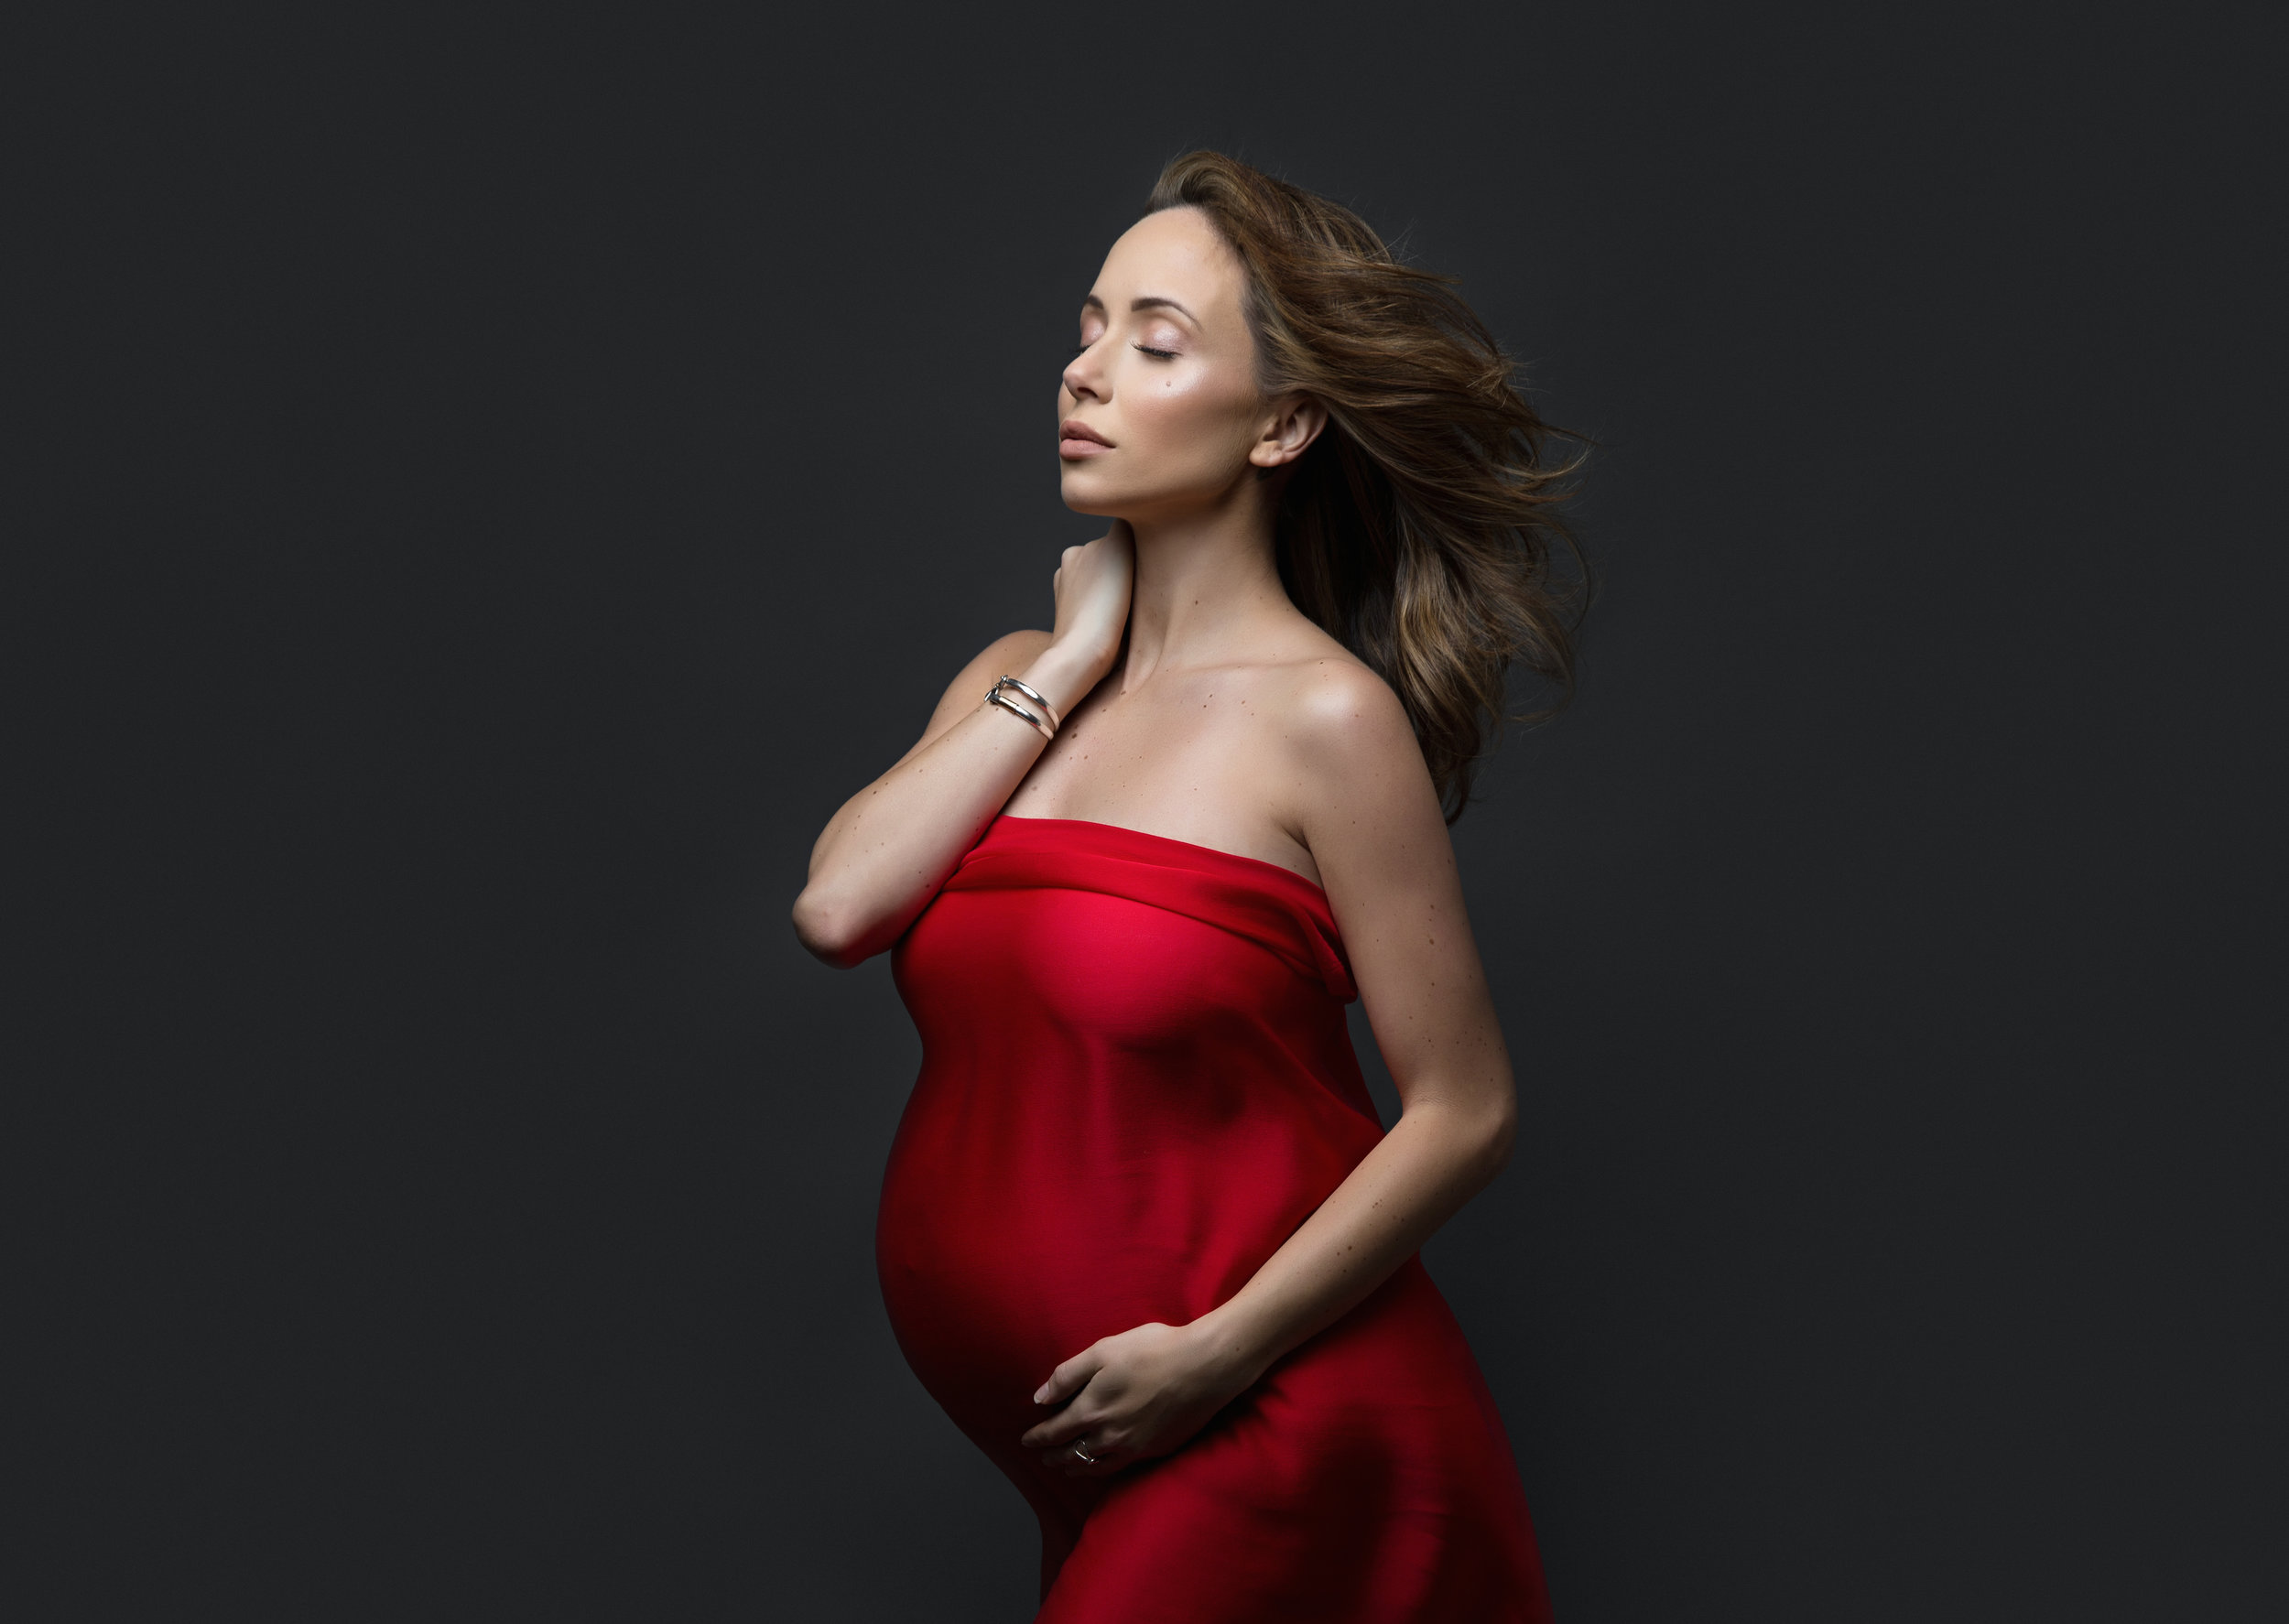 NYC pregnancy studio photography